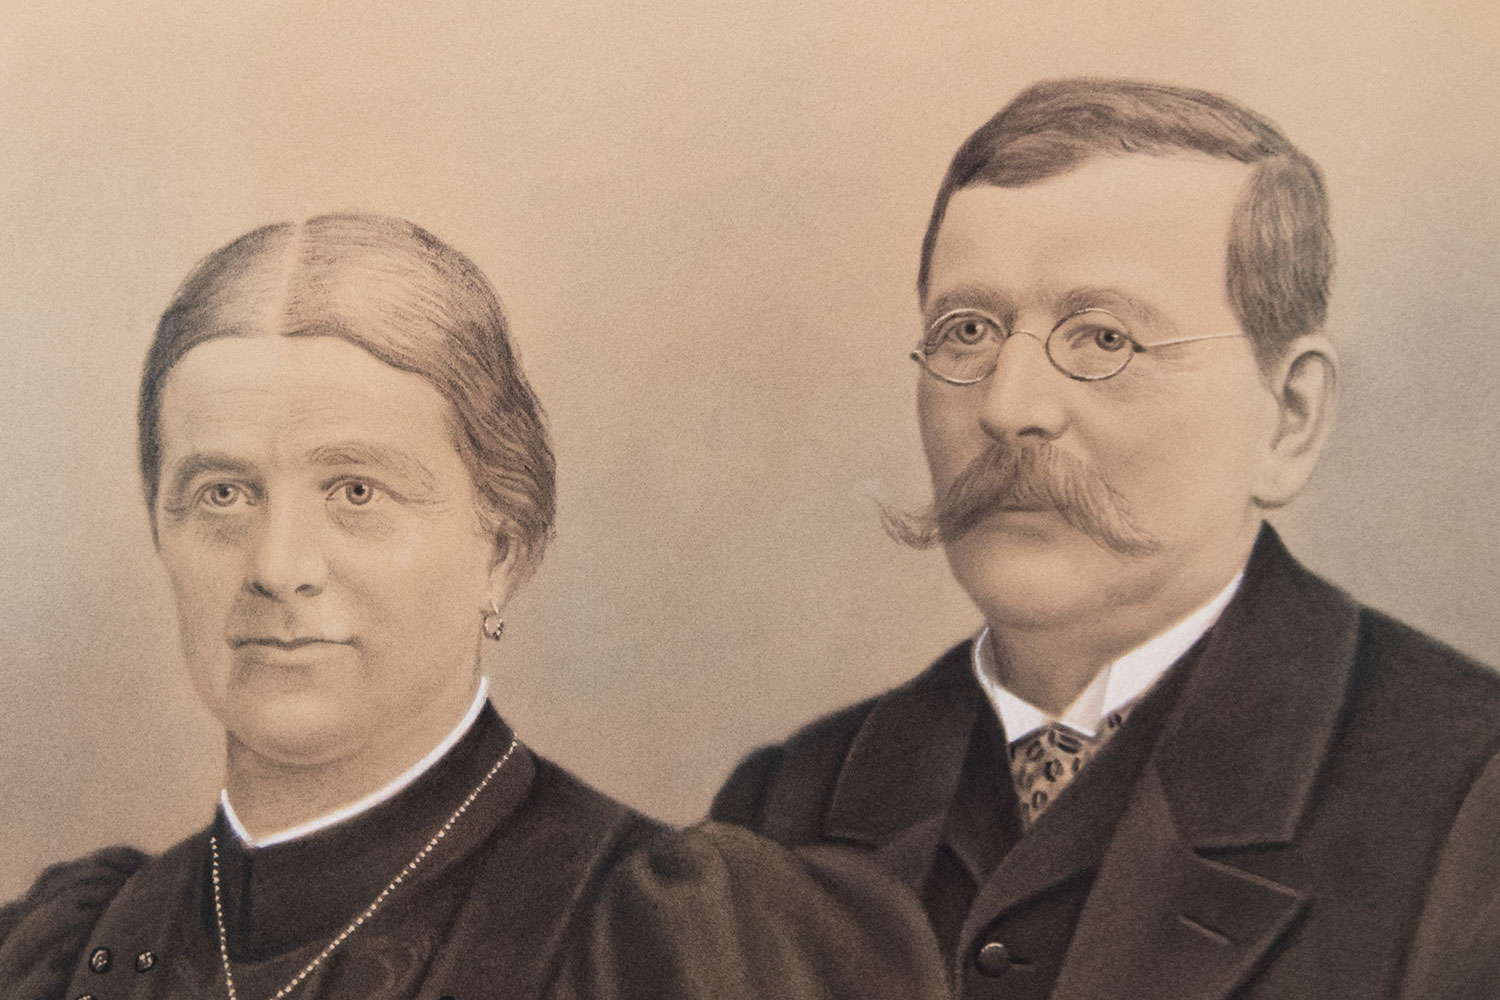 Zakladatel Franz Pöttinger s manželkou Julianou, která se starala o účetnictví a fakturaci.